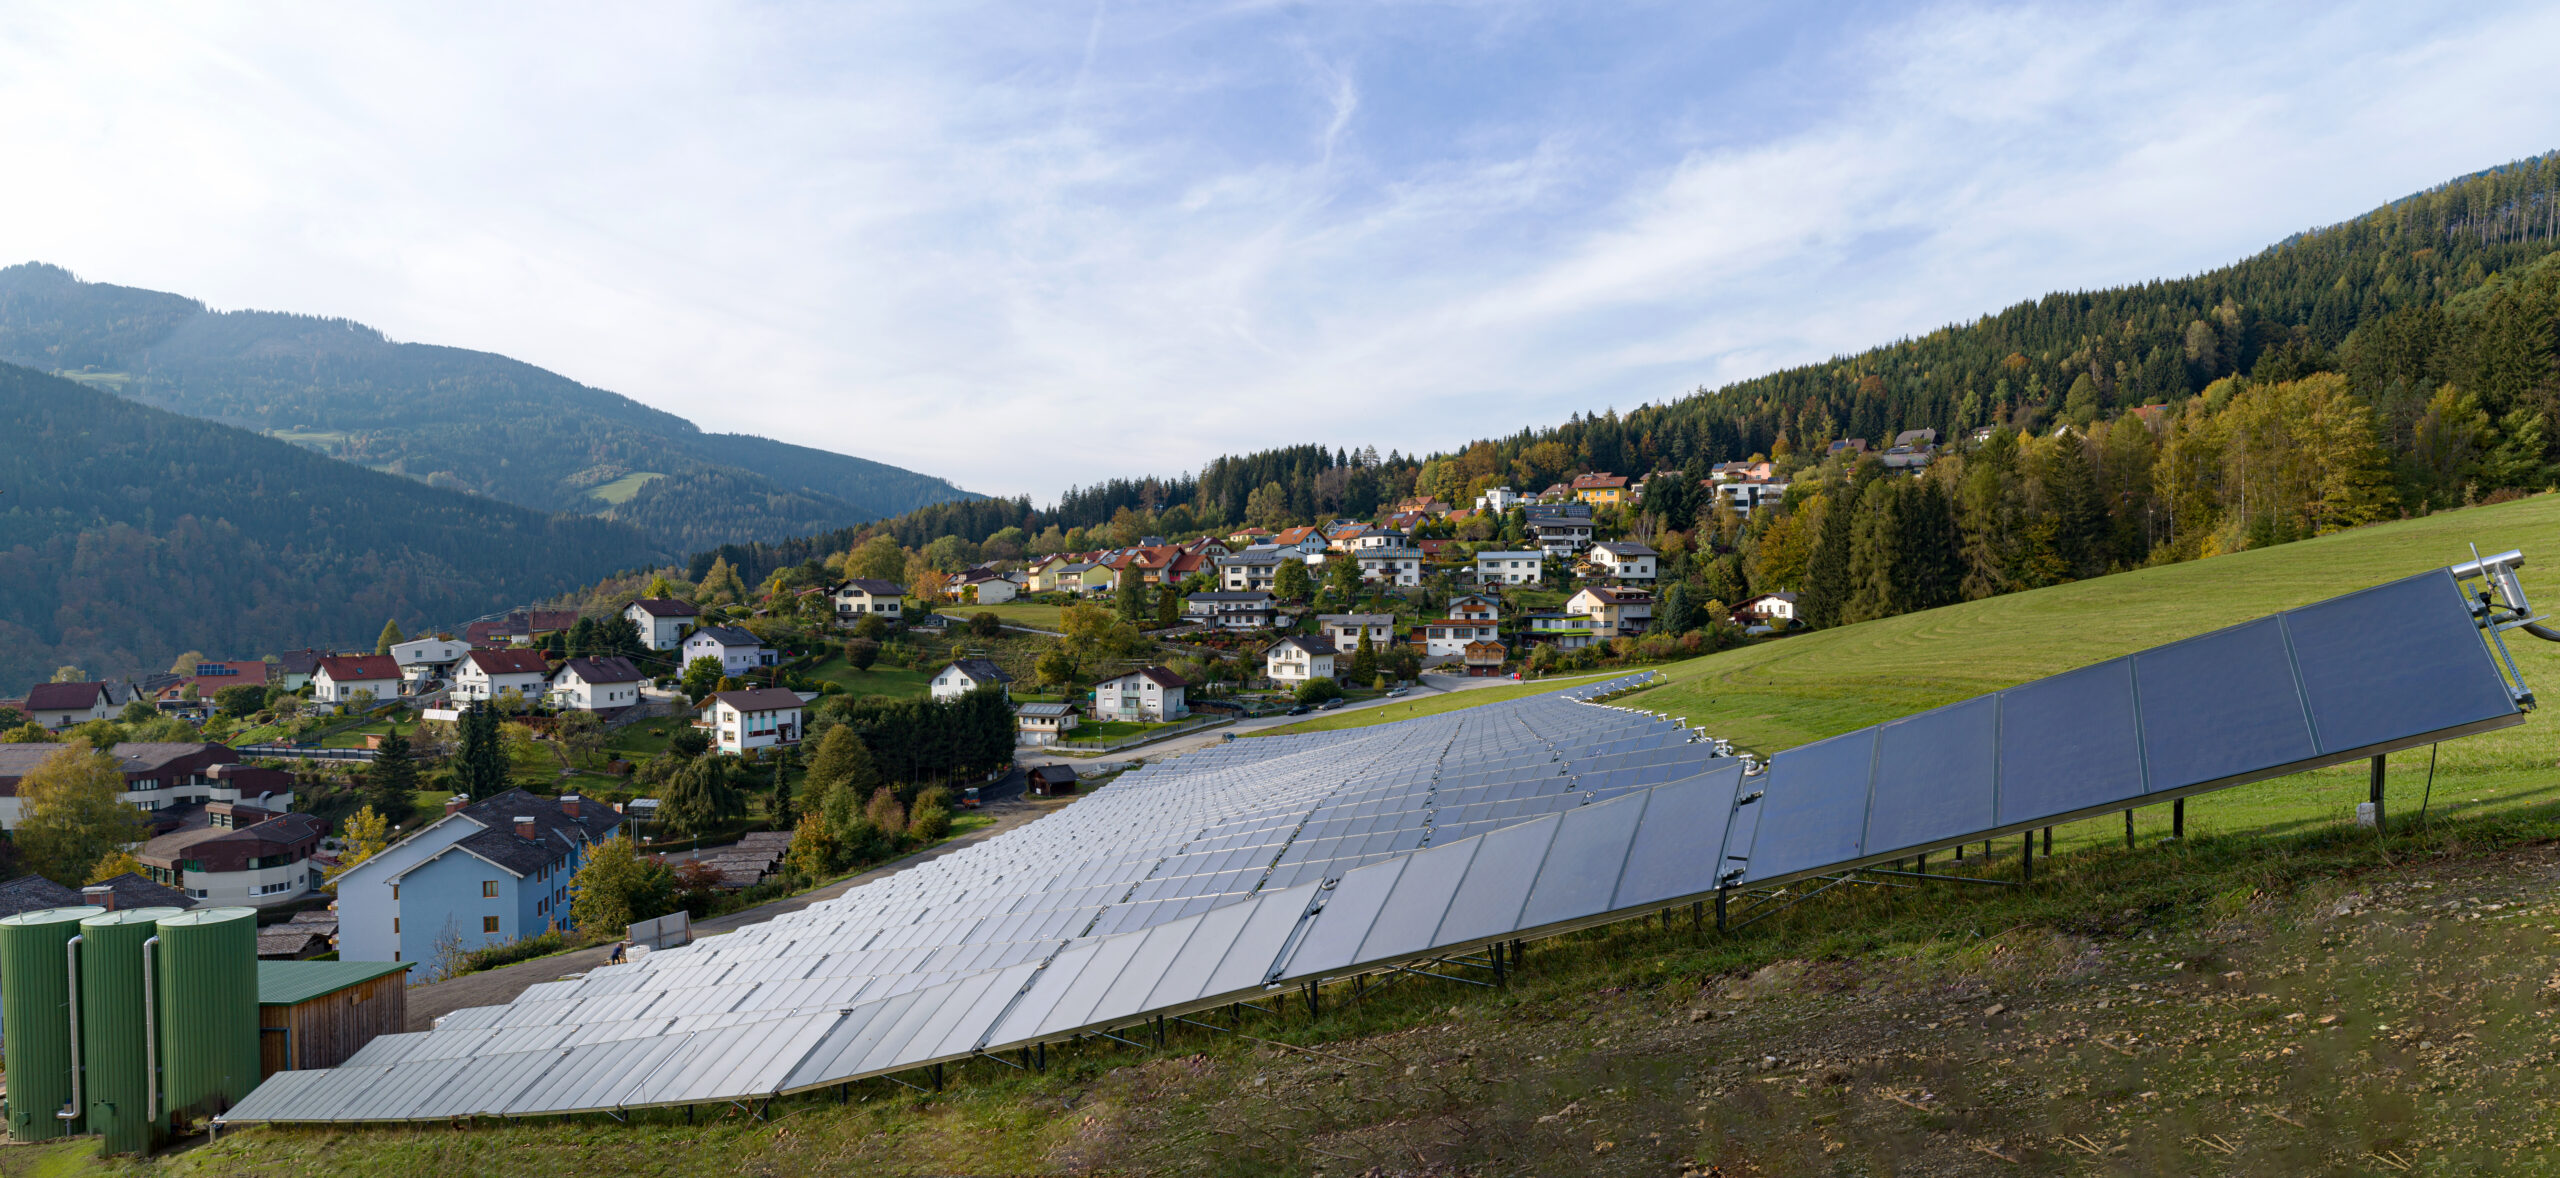 Solaranlage auf einem grünen Feld in Mürzzuschlag. Dahinter sieht man die Häuser der Stadtgemeinde.